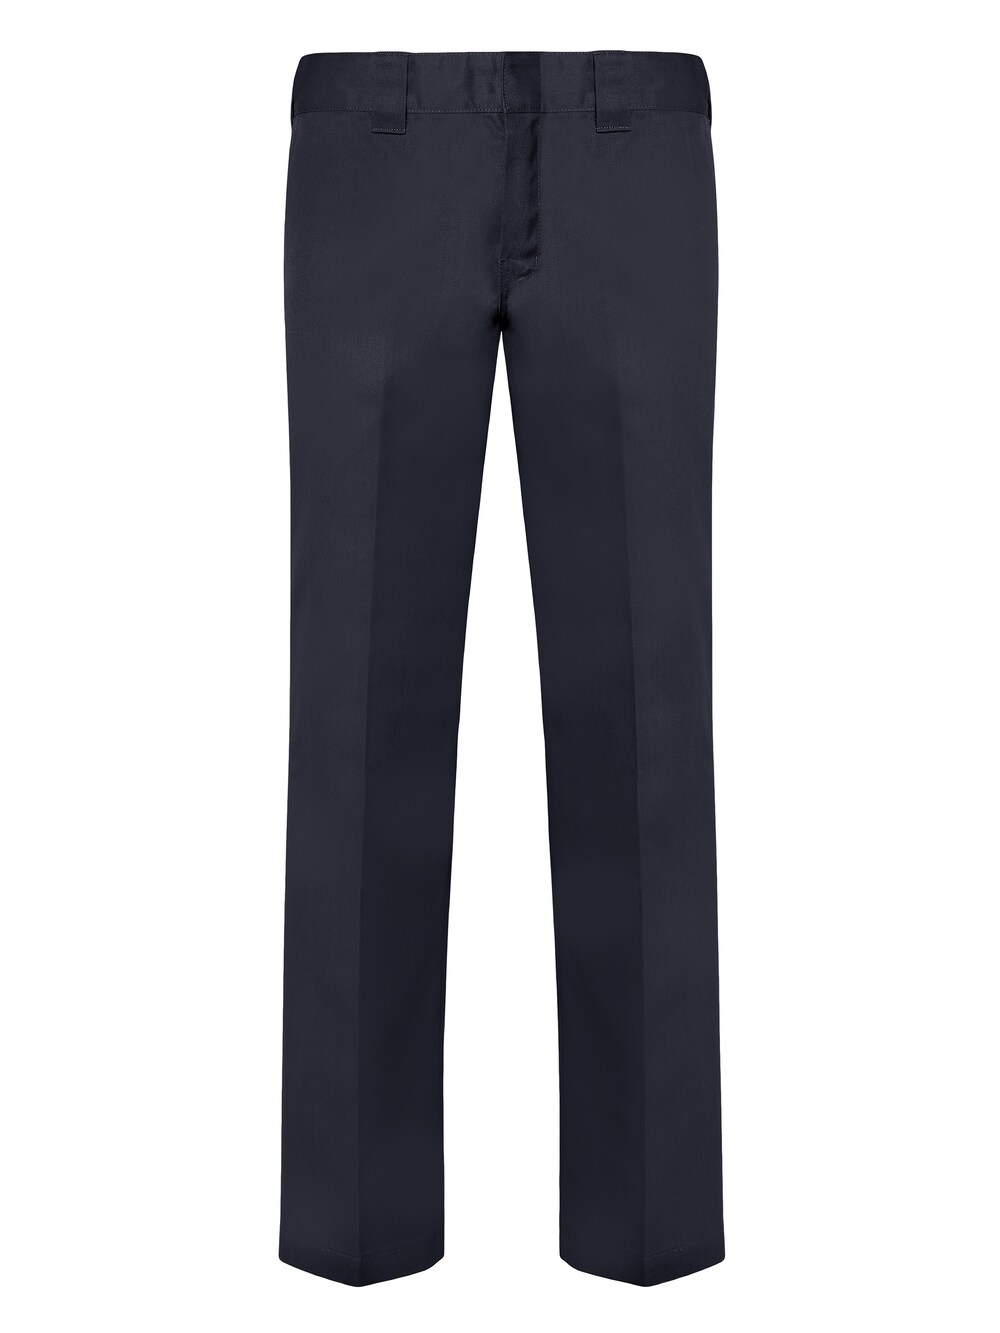 Обычные плиссированные брюки Dickies 873, синий